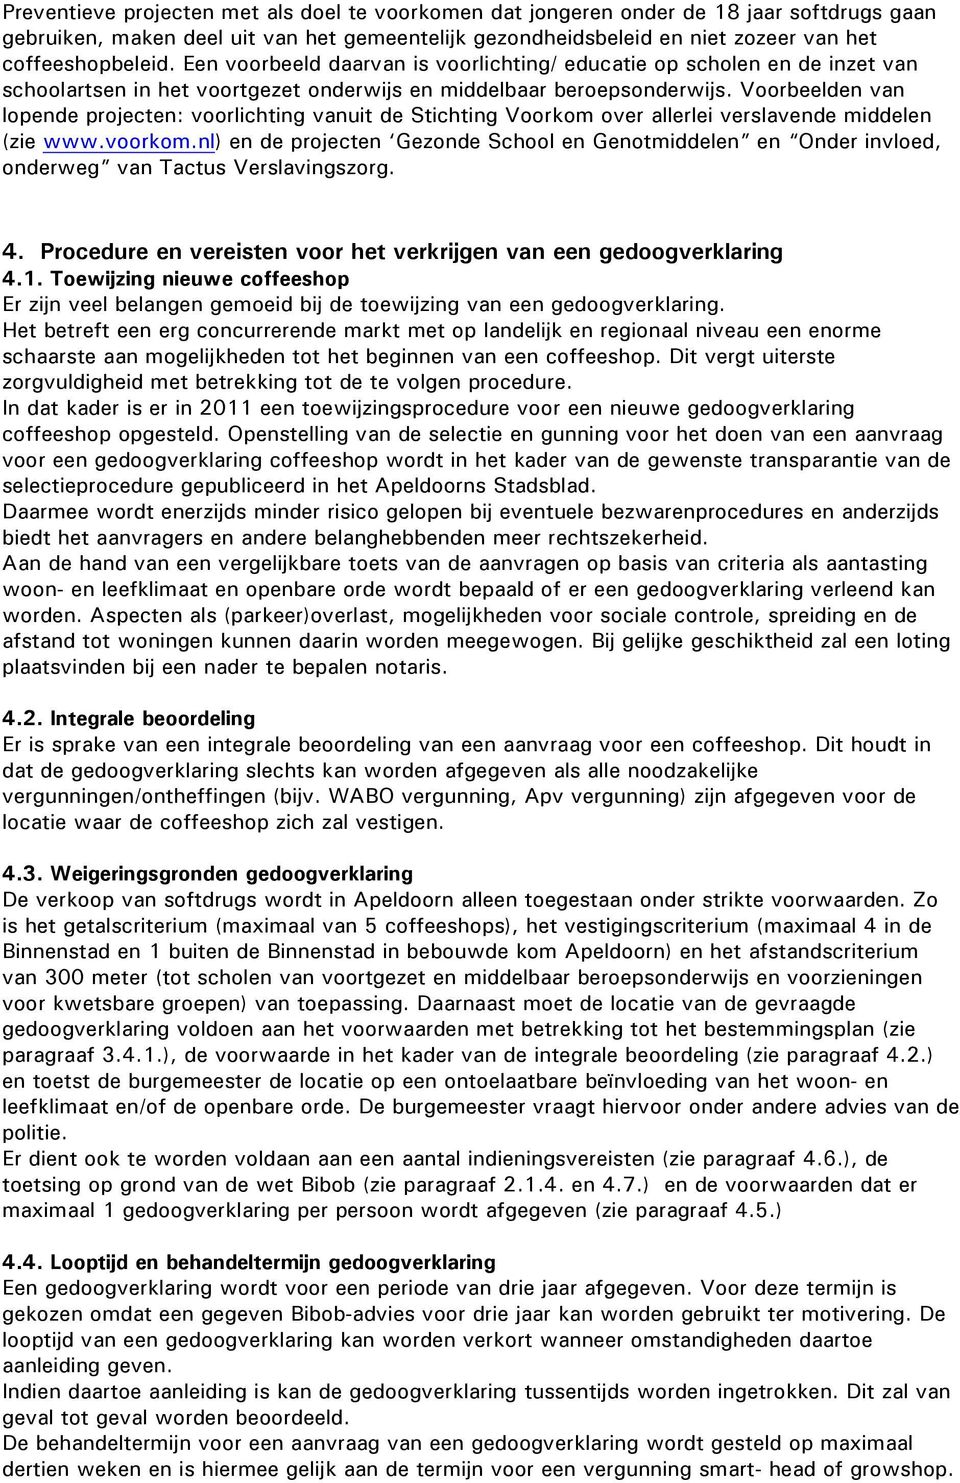 Voorbeelden van lopende projecten: voorlichting vanuit de Stichting Voorkom over allerlei verslavende middelen (zie www.voorkom.